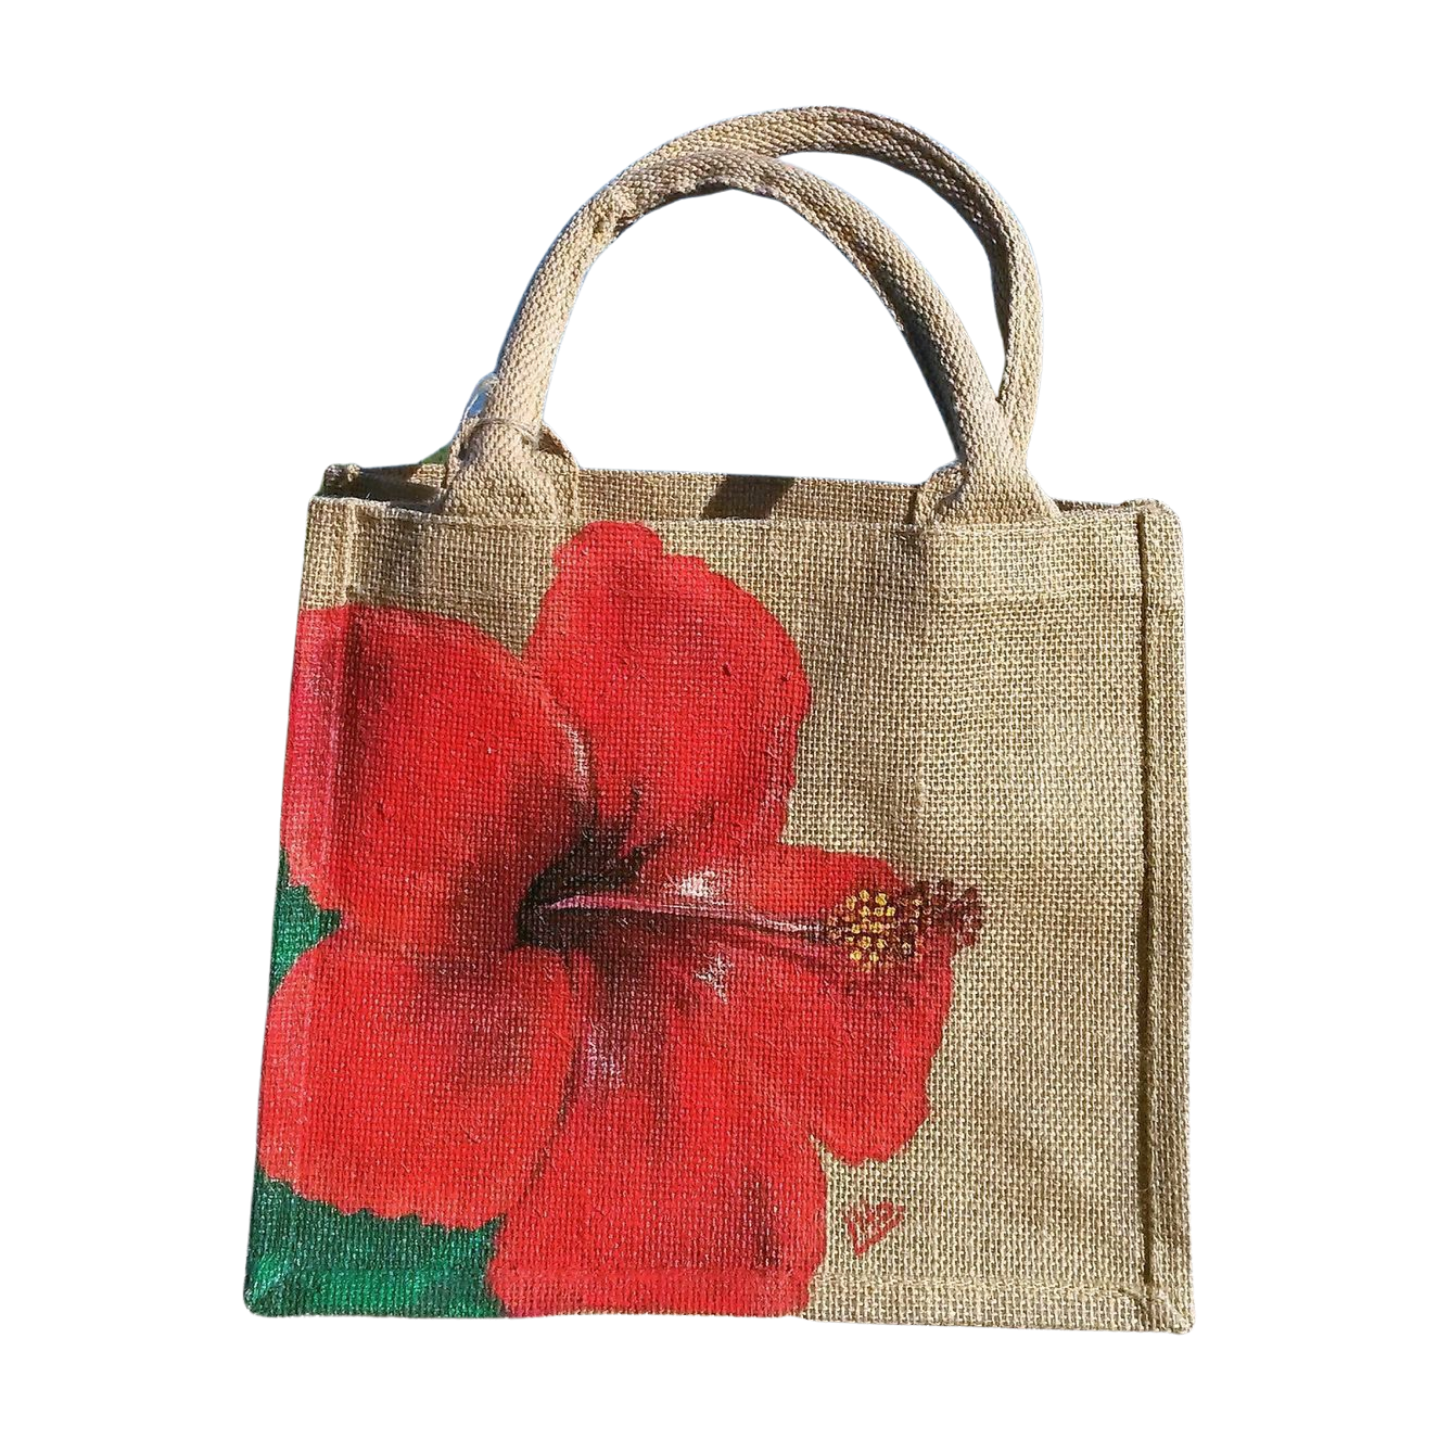 Petit sac en jute avec hibiscus rouge peint à la main